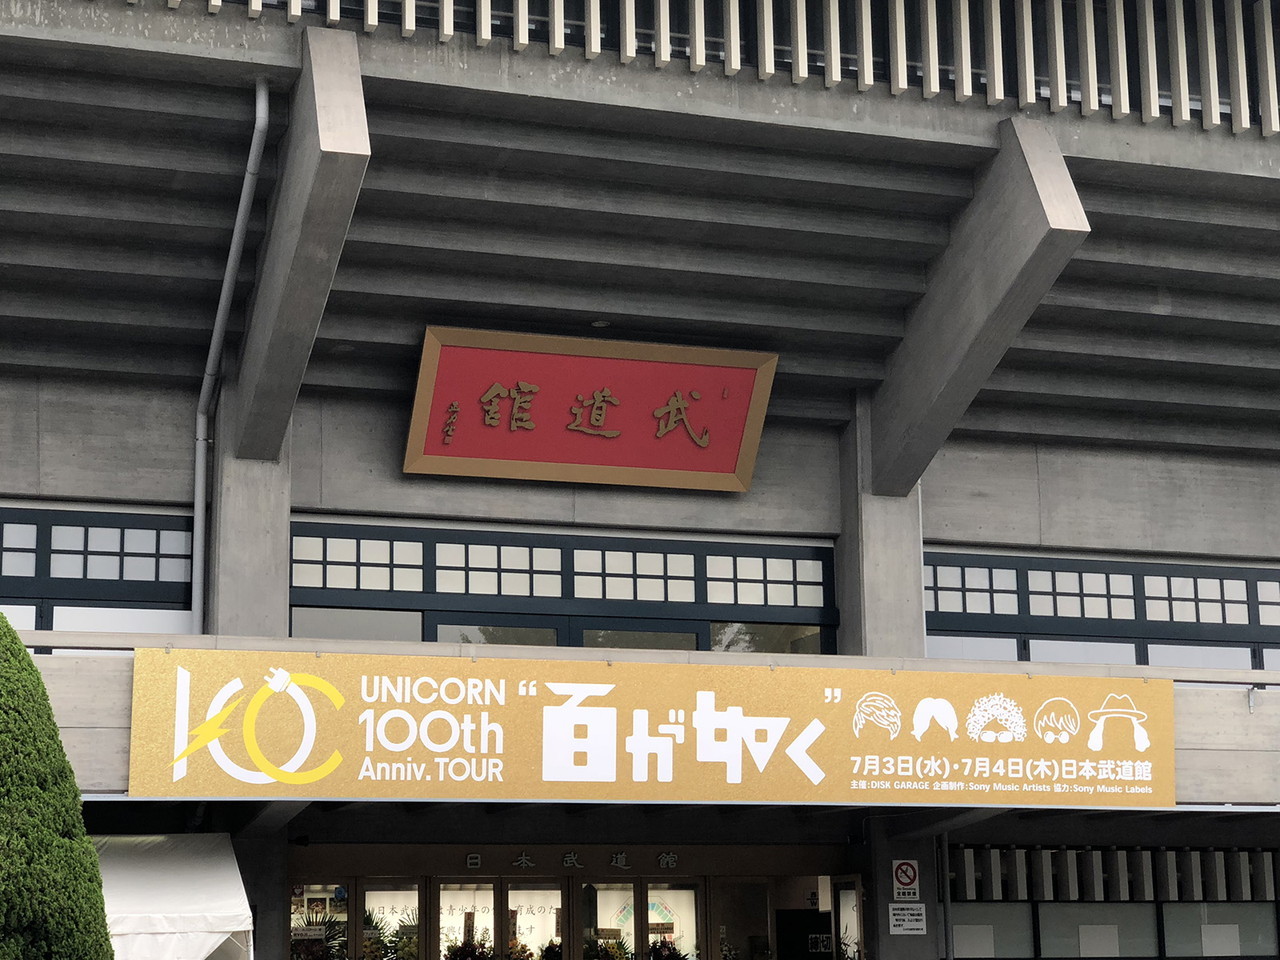 ユニコーンツアー「百が如く」日本武道館公演